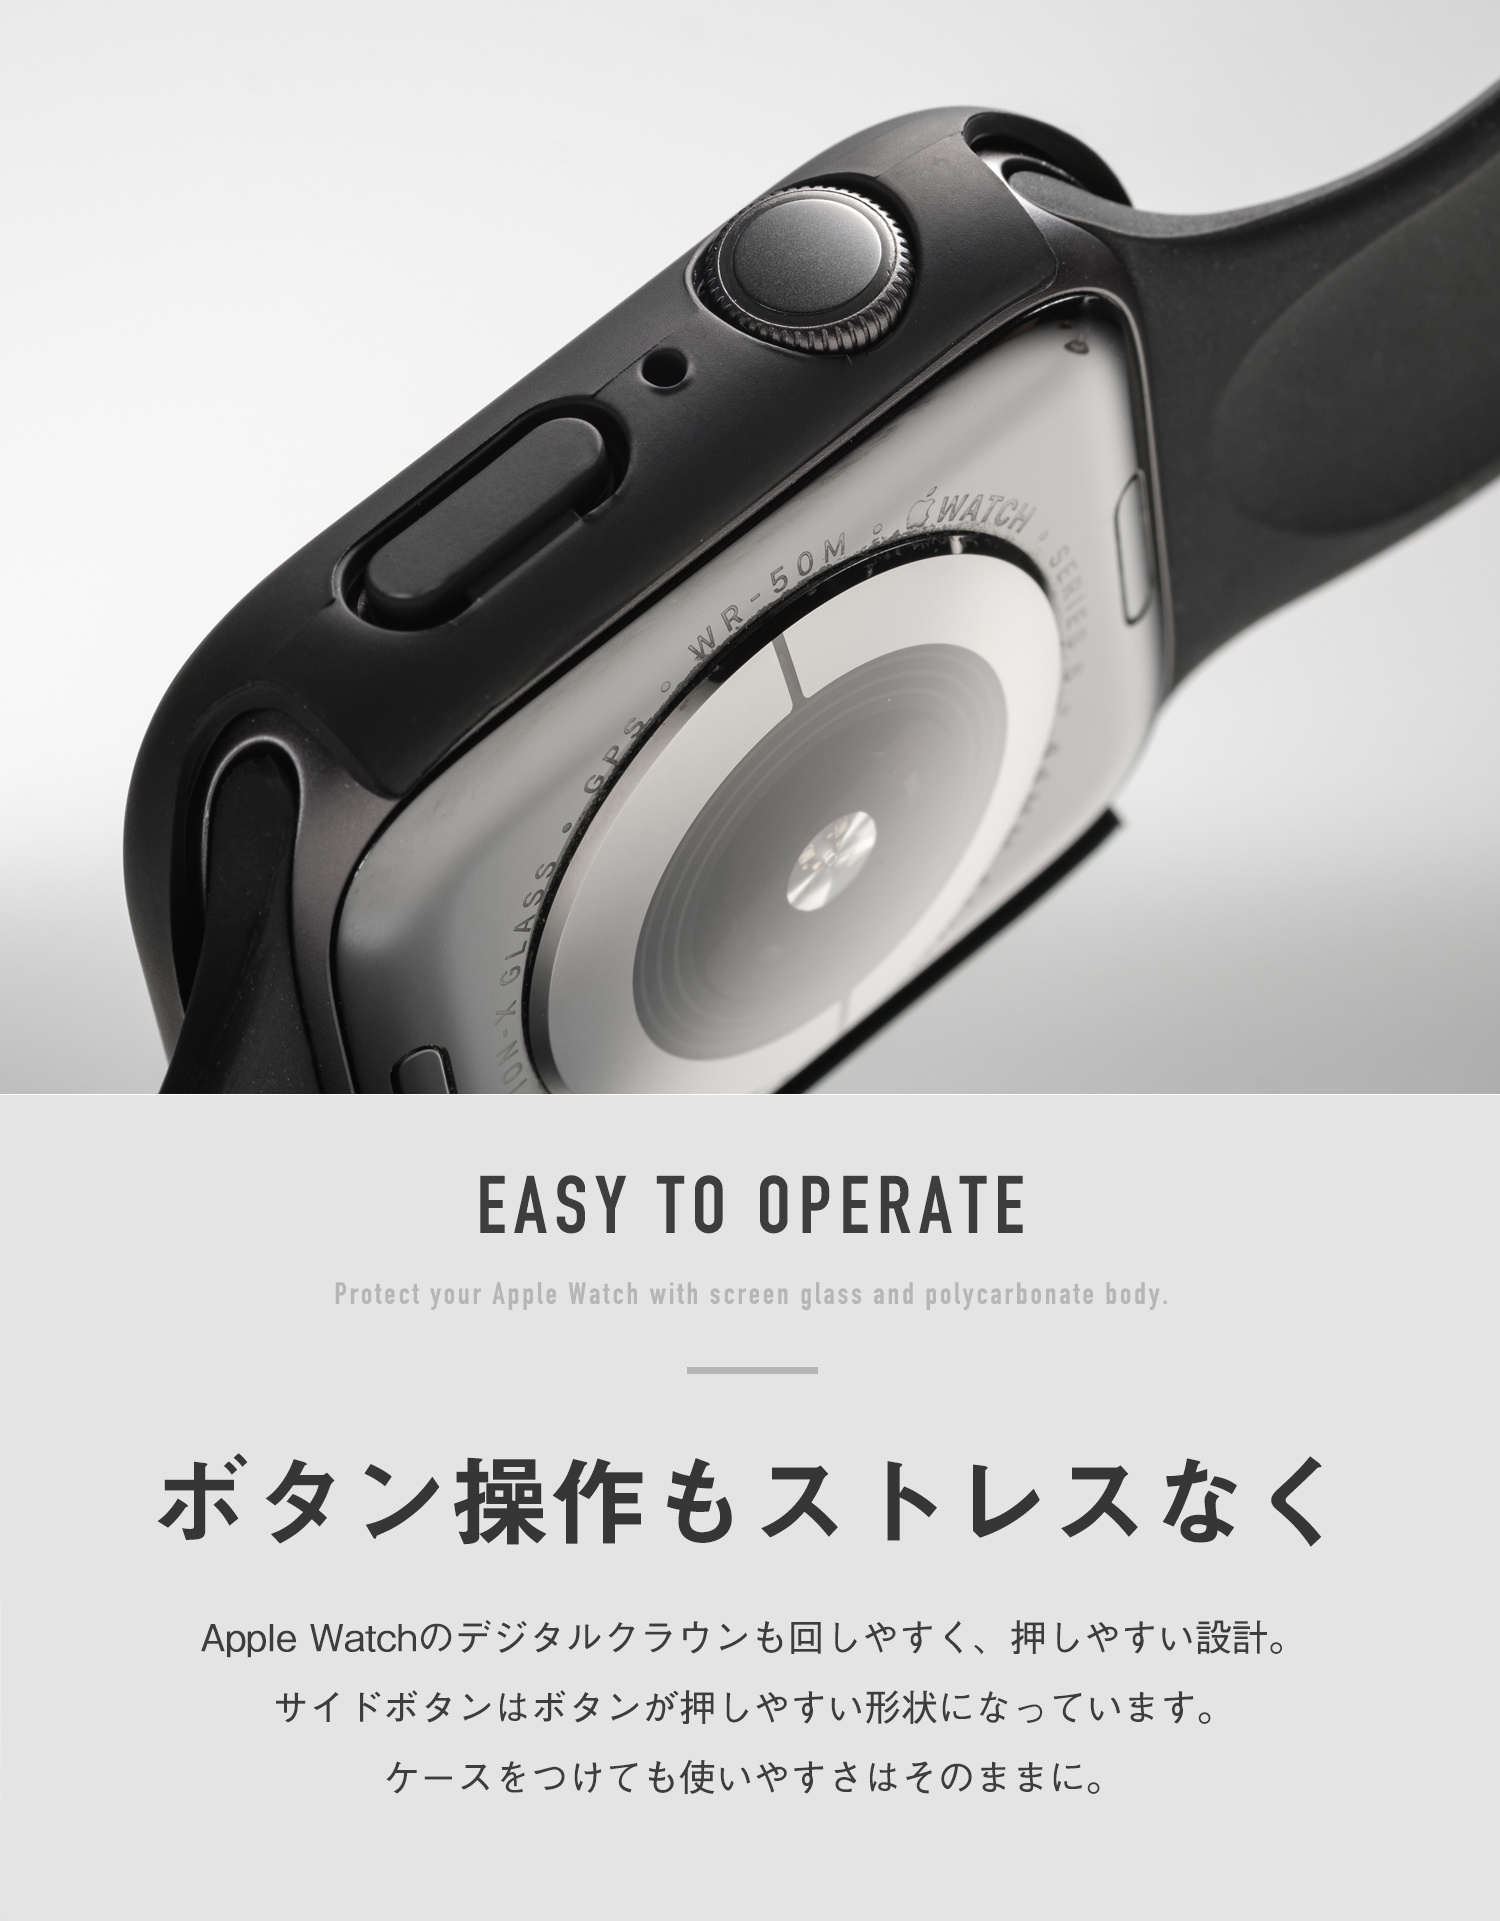 ☆送料無料☆ 当日発送可能 AppleWatch 42mm ハードケース 保護カバー アップルウォッチ 黒色